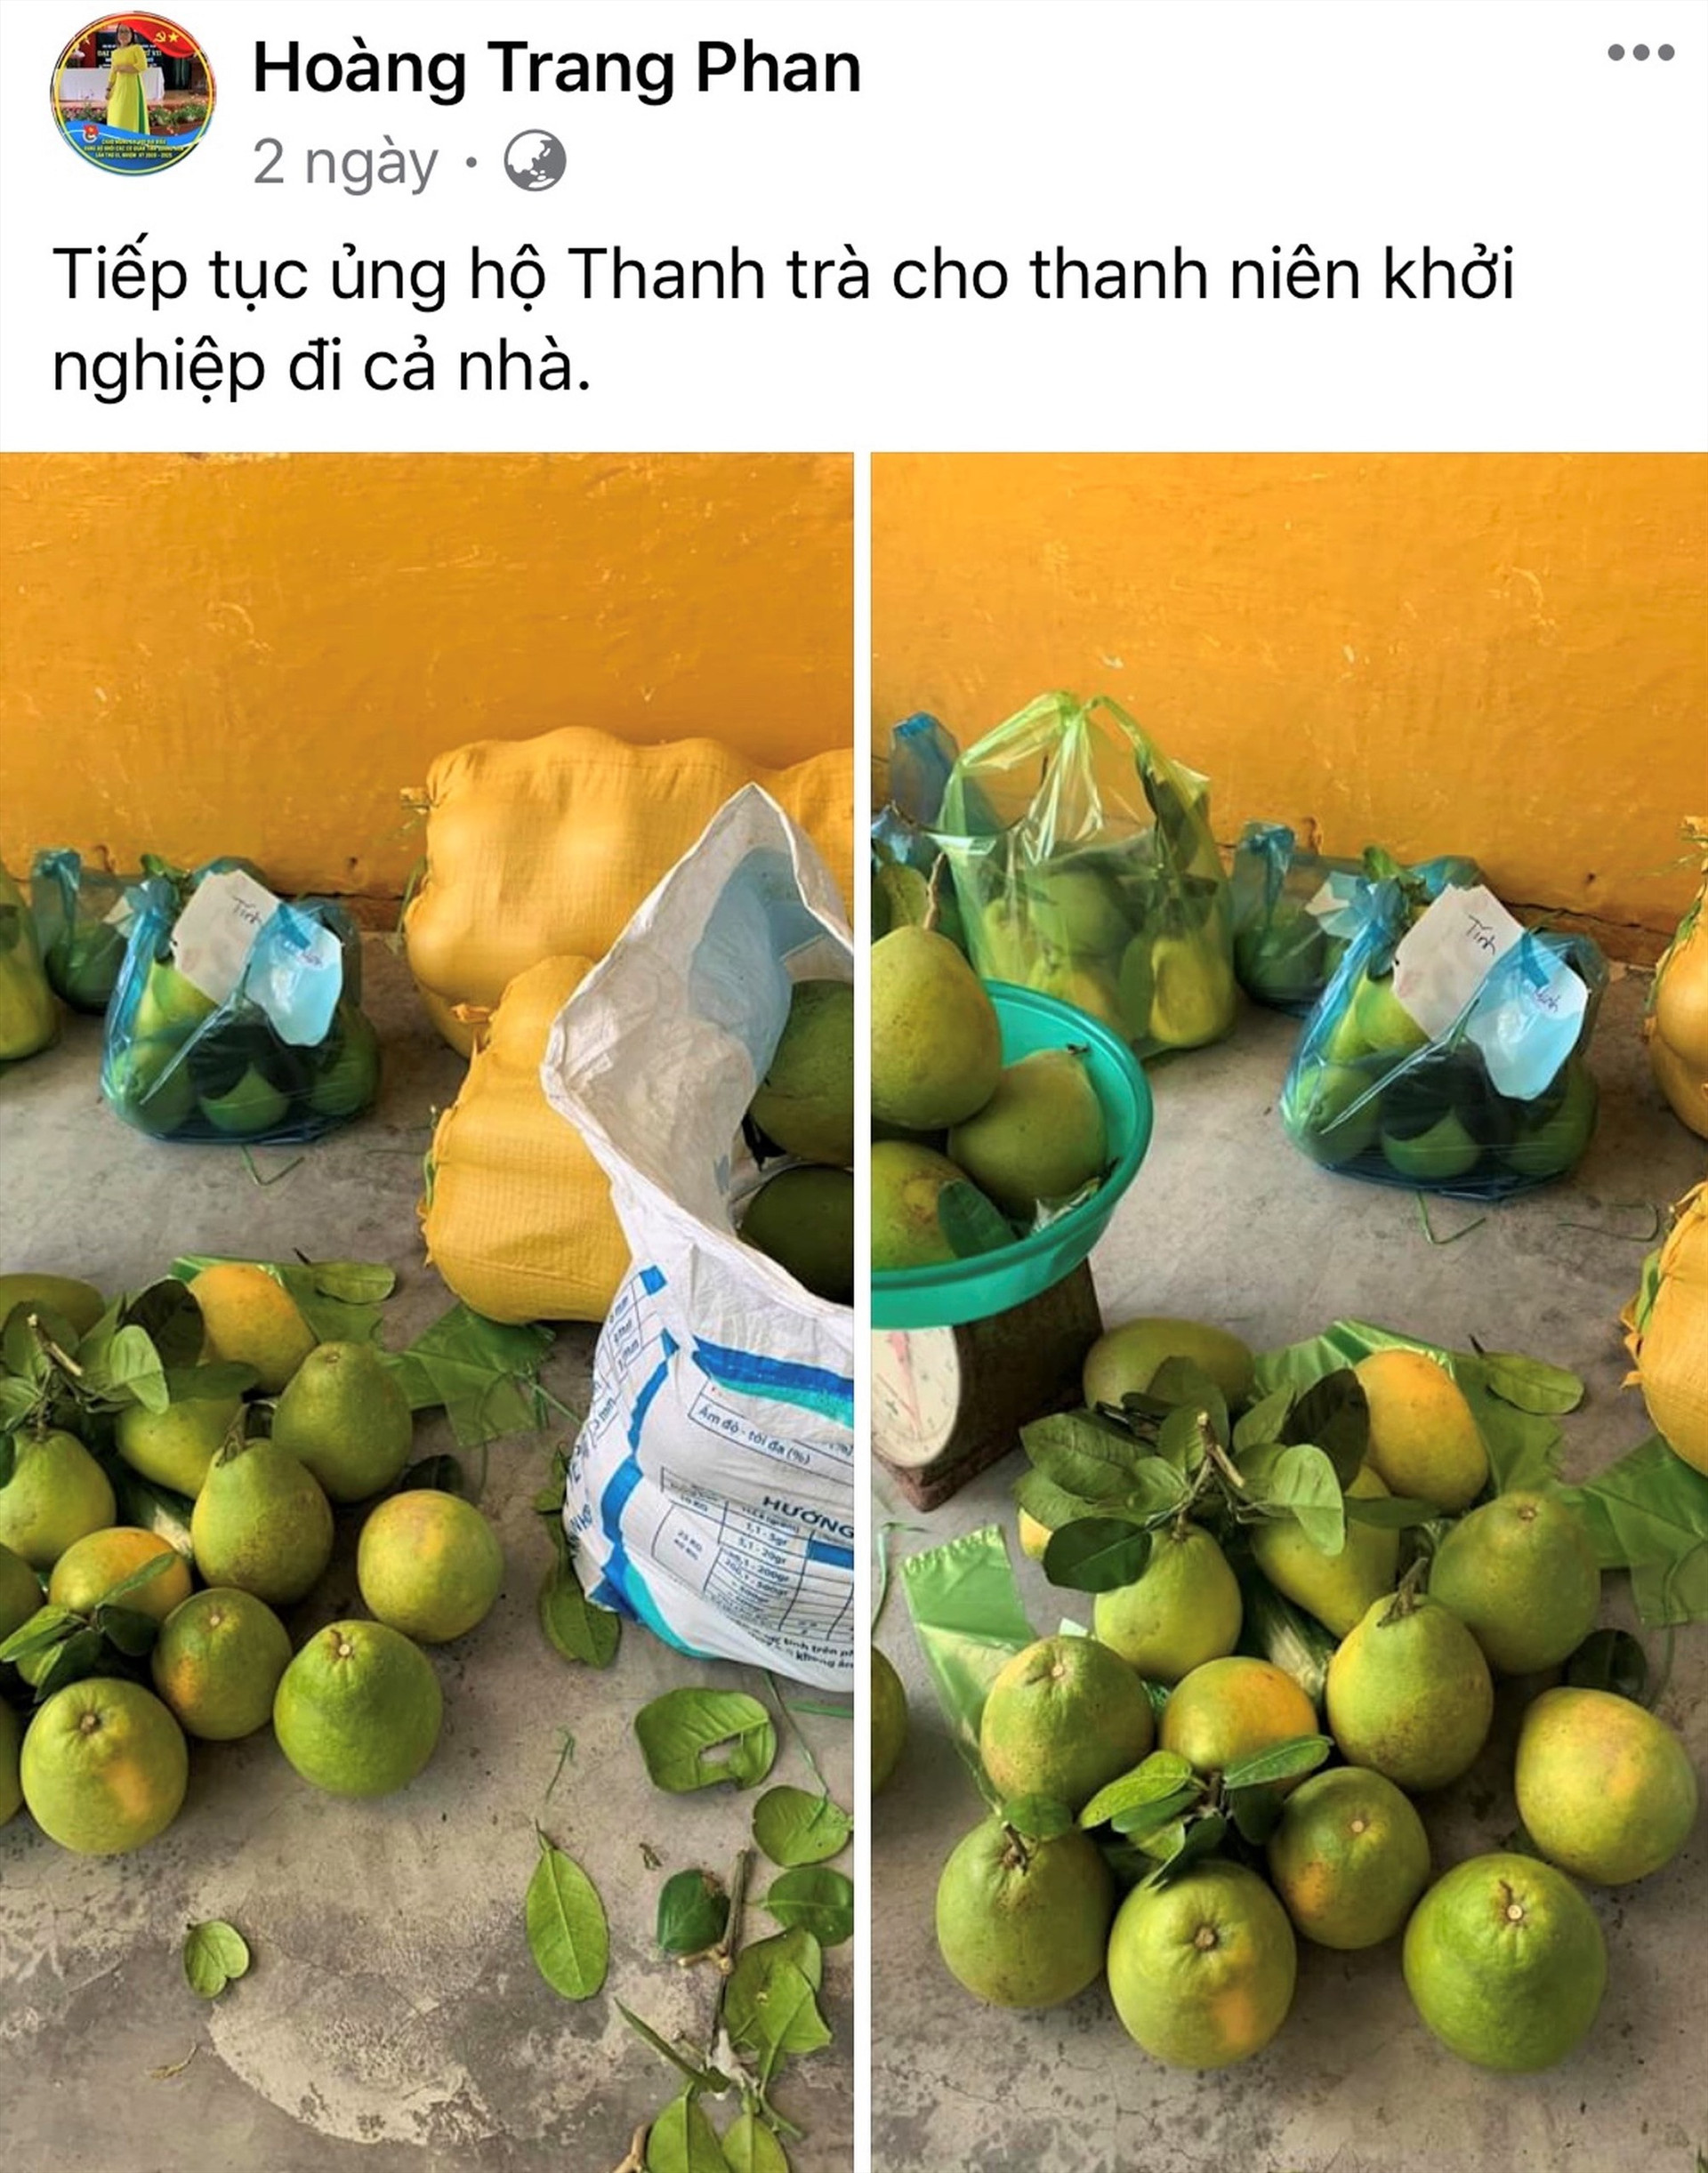 Chị Phan Thị Hoàng Trang, chuyên viên Ban Thanh niên nông thôn, công nhân và đô thị Tỉnh đoàn đăng bán thanh trà giúp anh Nguyễn Ngọc Huy trên trang cá nhân facebook. Ảnh: VINH ANH